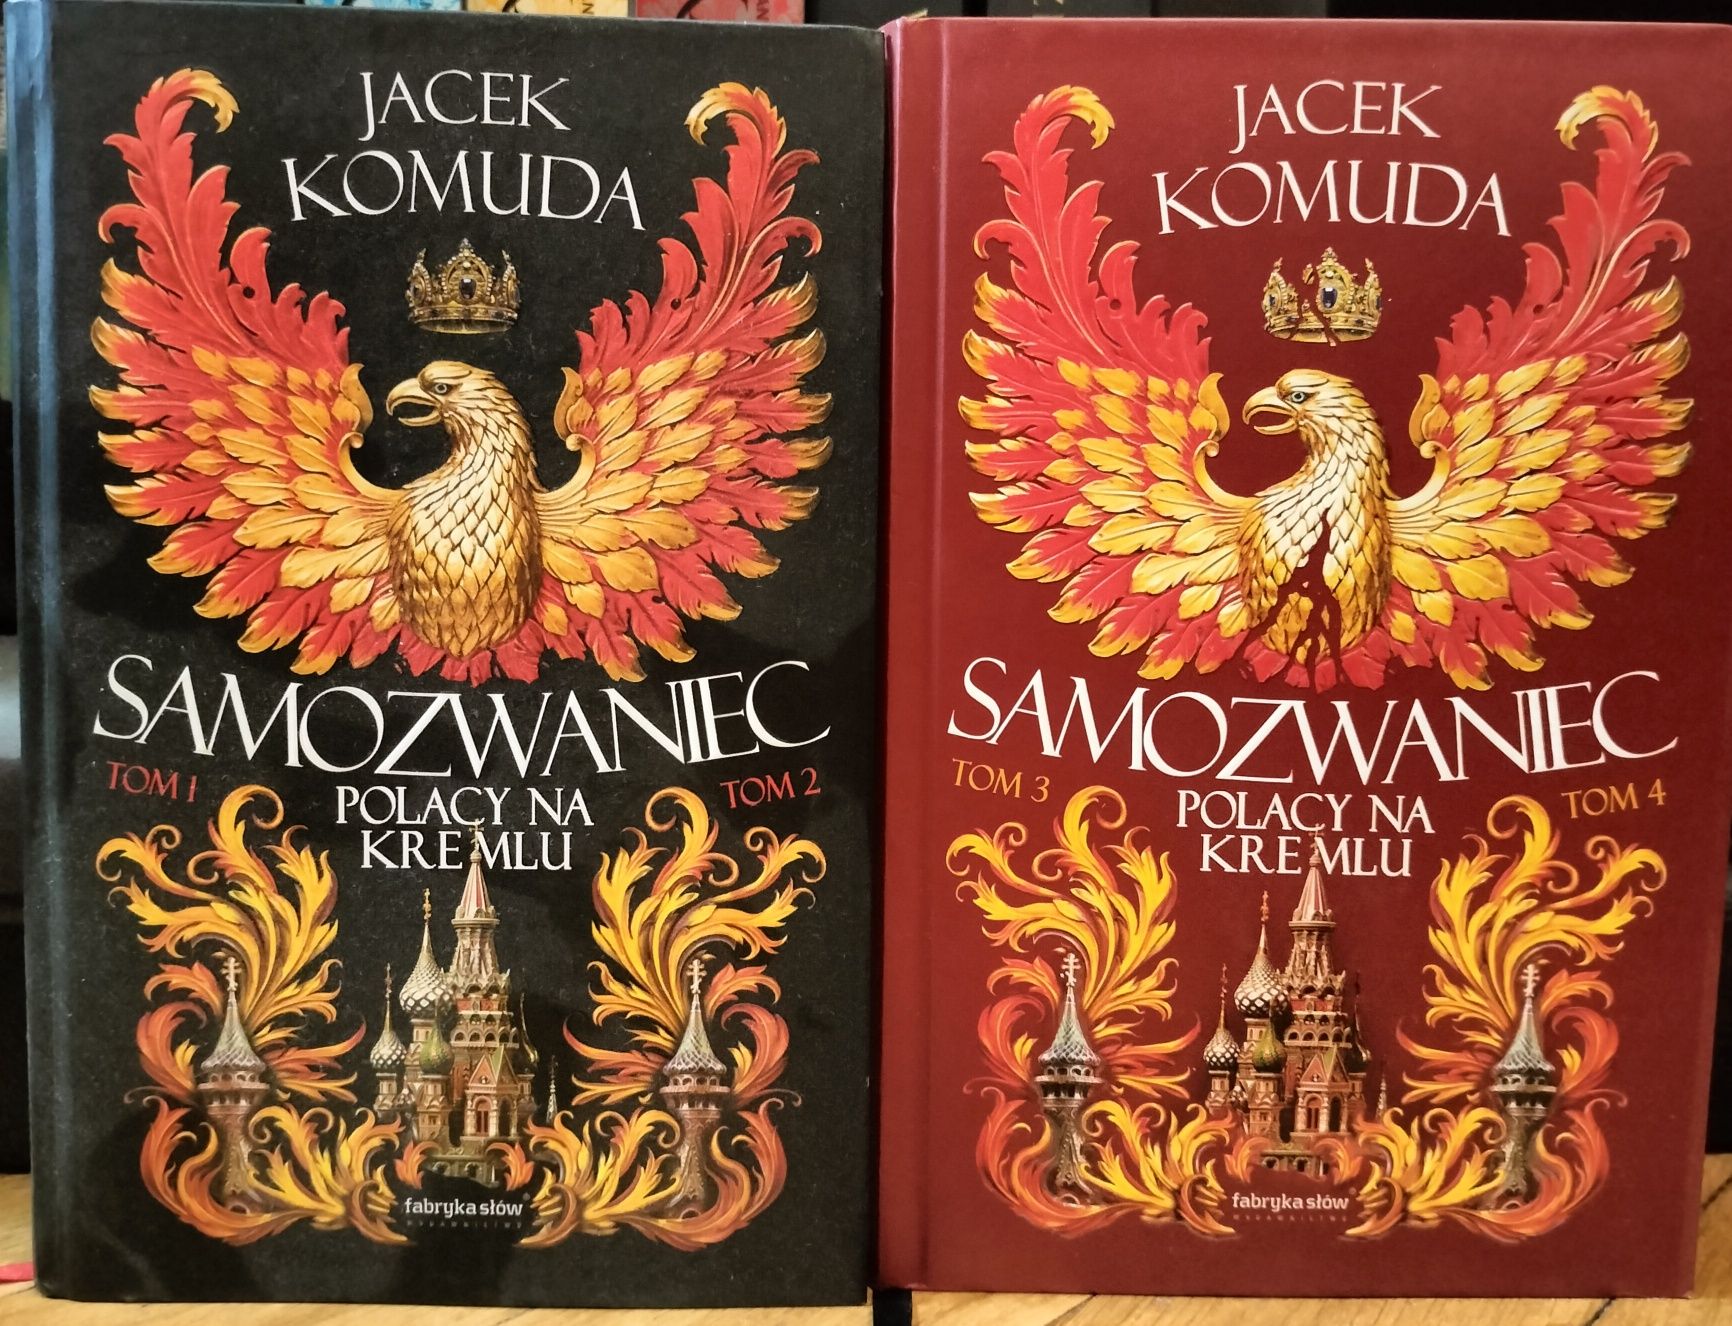 Jacek Komuda Samozwaniec tomy 1,2,3,4